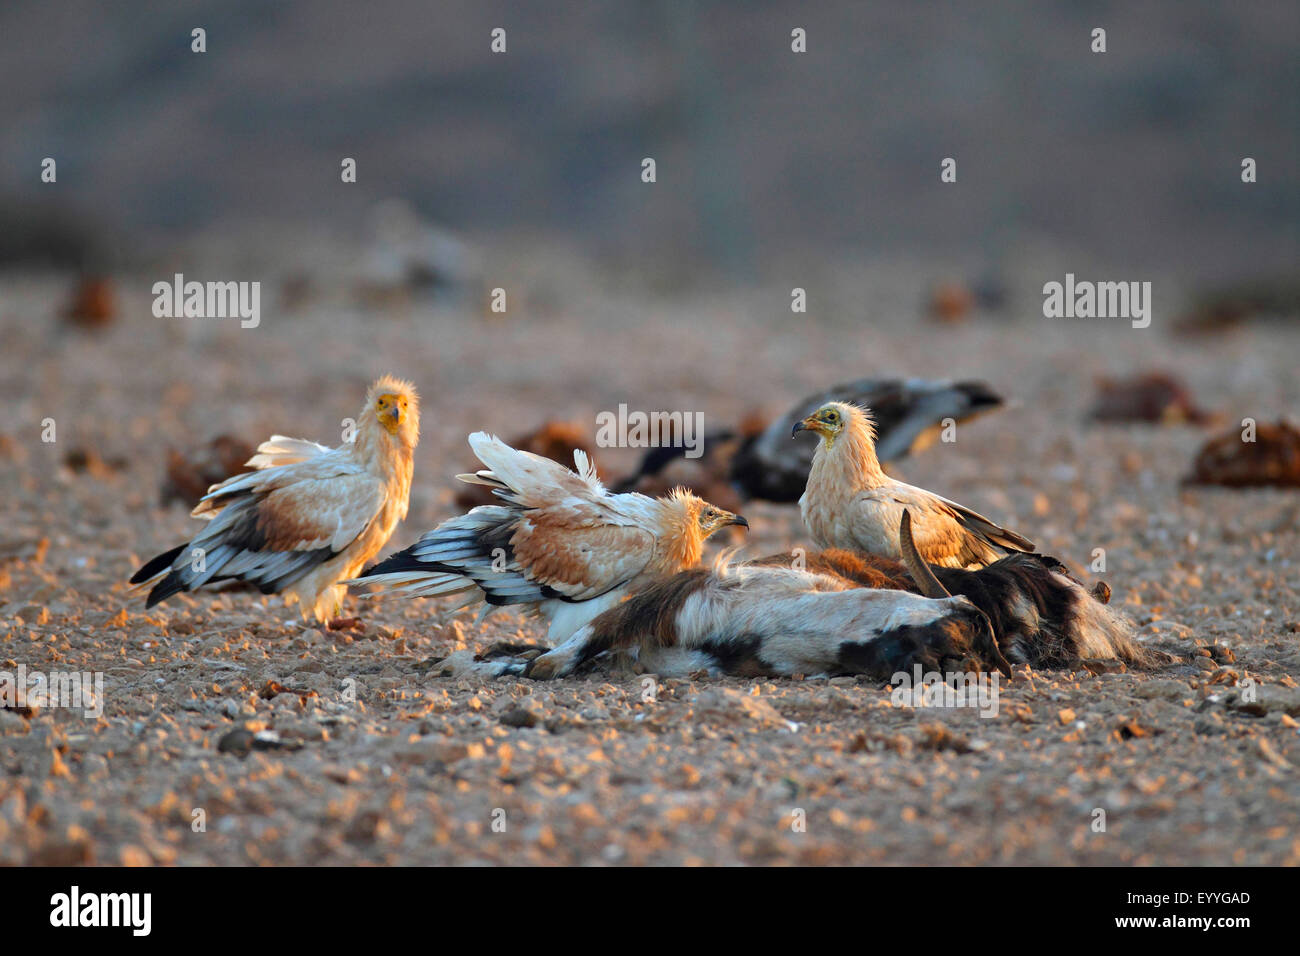 Avvoltoio capovaccaio (Neophron percnopterus), alcuni avvoltoi alimentando ad una capra, Isole Canarie Fuerteventura Foto Stock